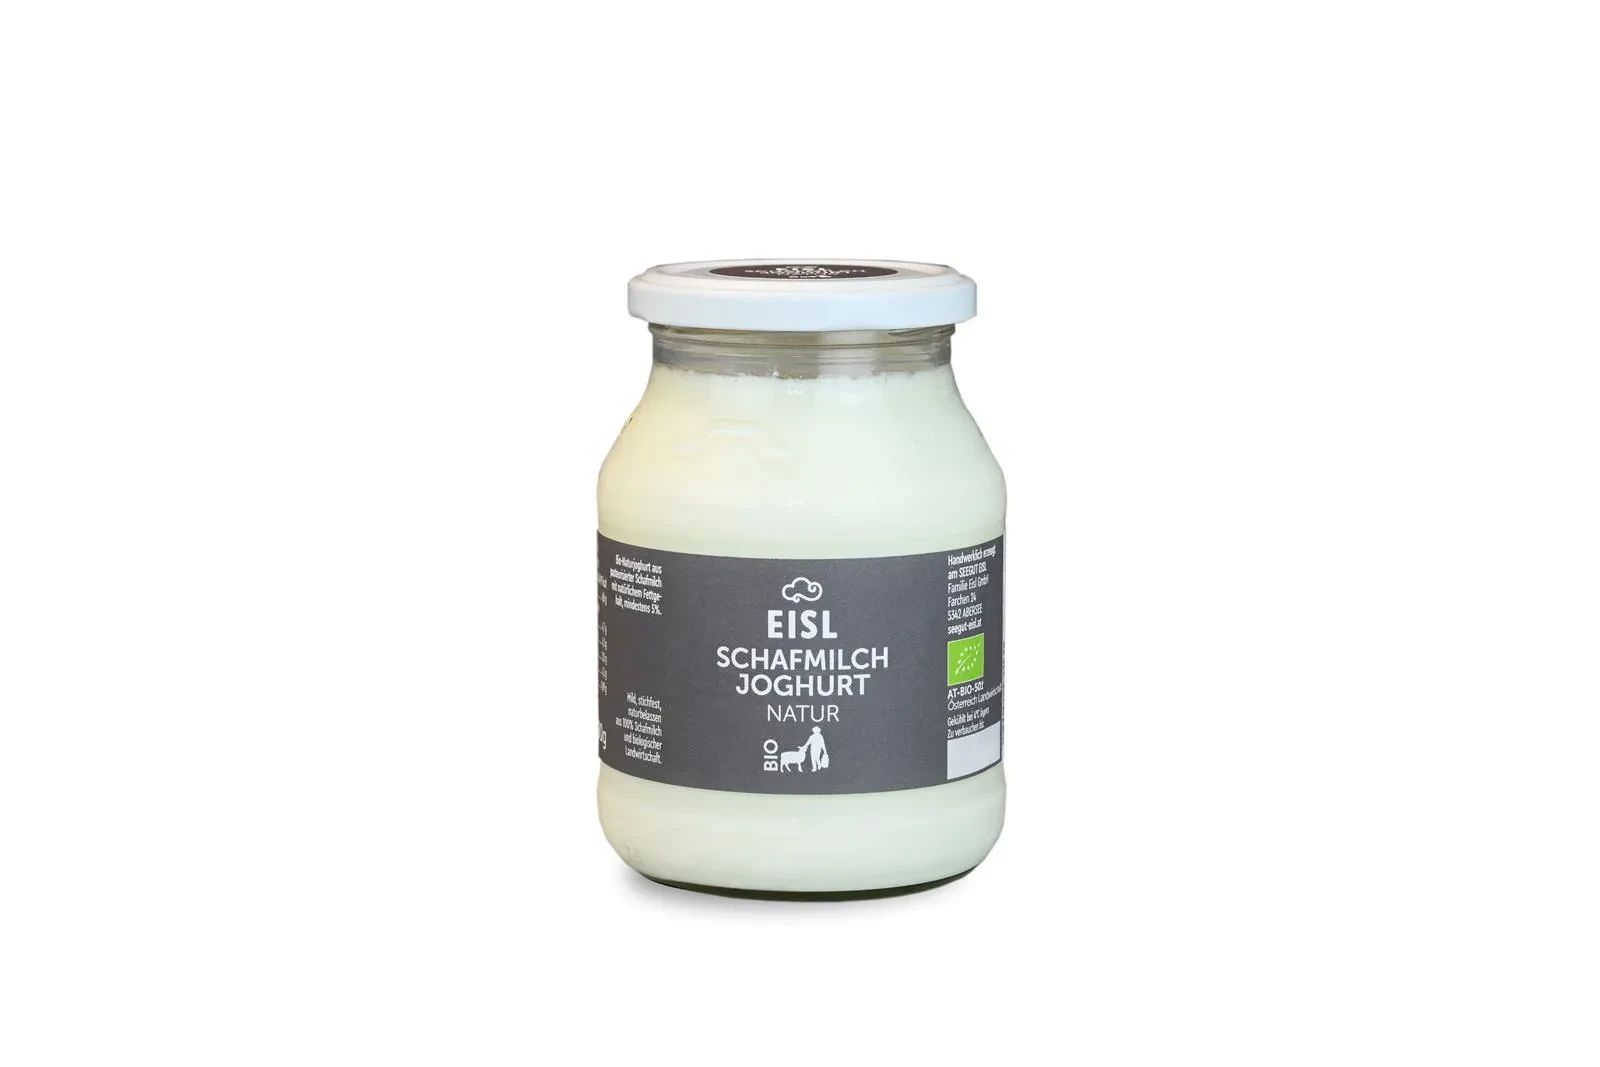 EISL Schafmilch Joghurt Natur im Glas